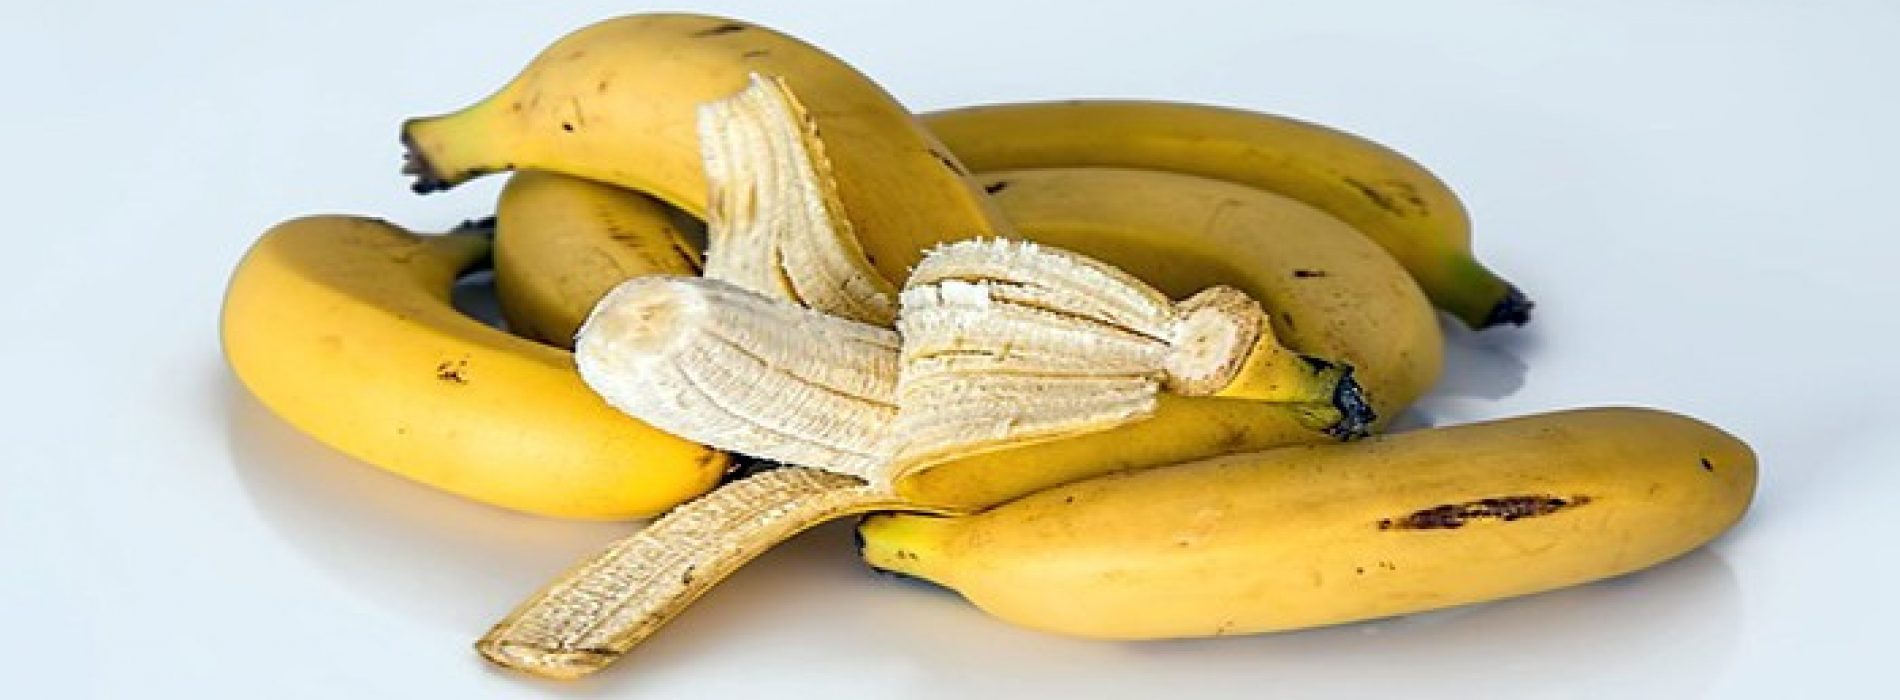 Eet jij twee bananen per dag? Dit is wat er dan met je lichaam gebeurt…